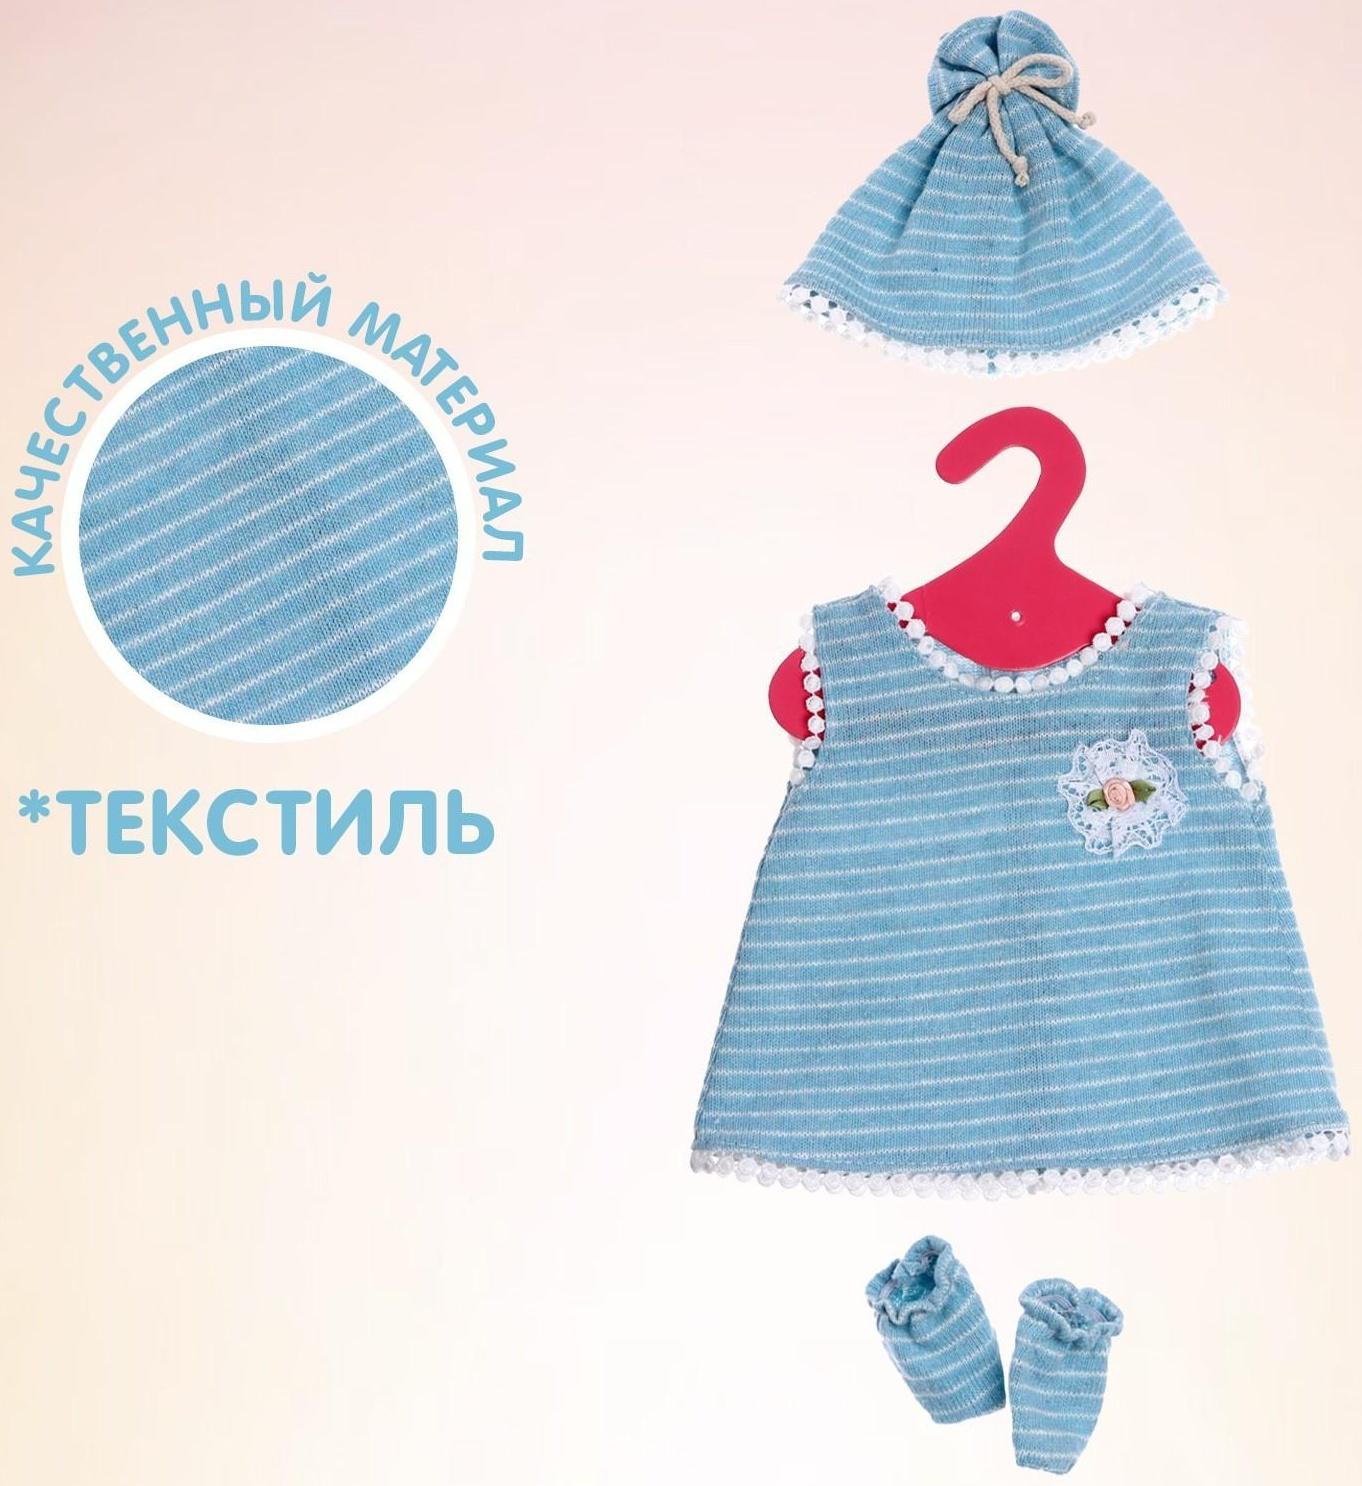 Одежда для пупса «Мой малыш» платье, шапочка, носочки